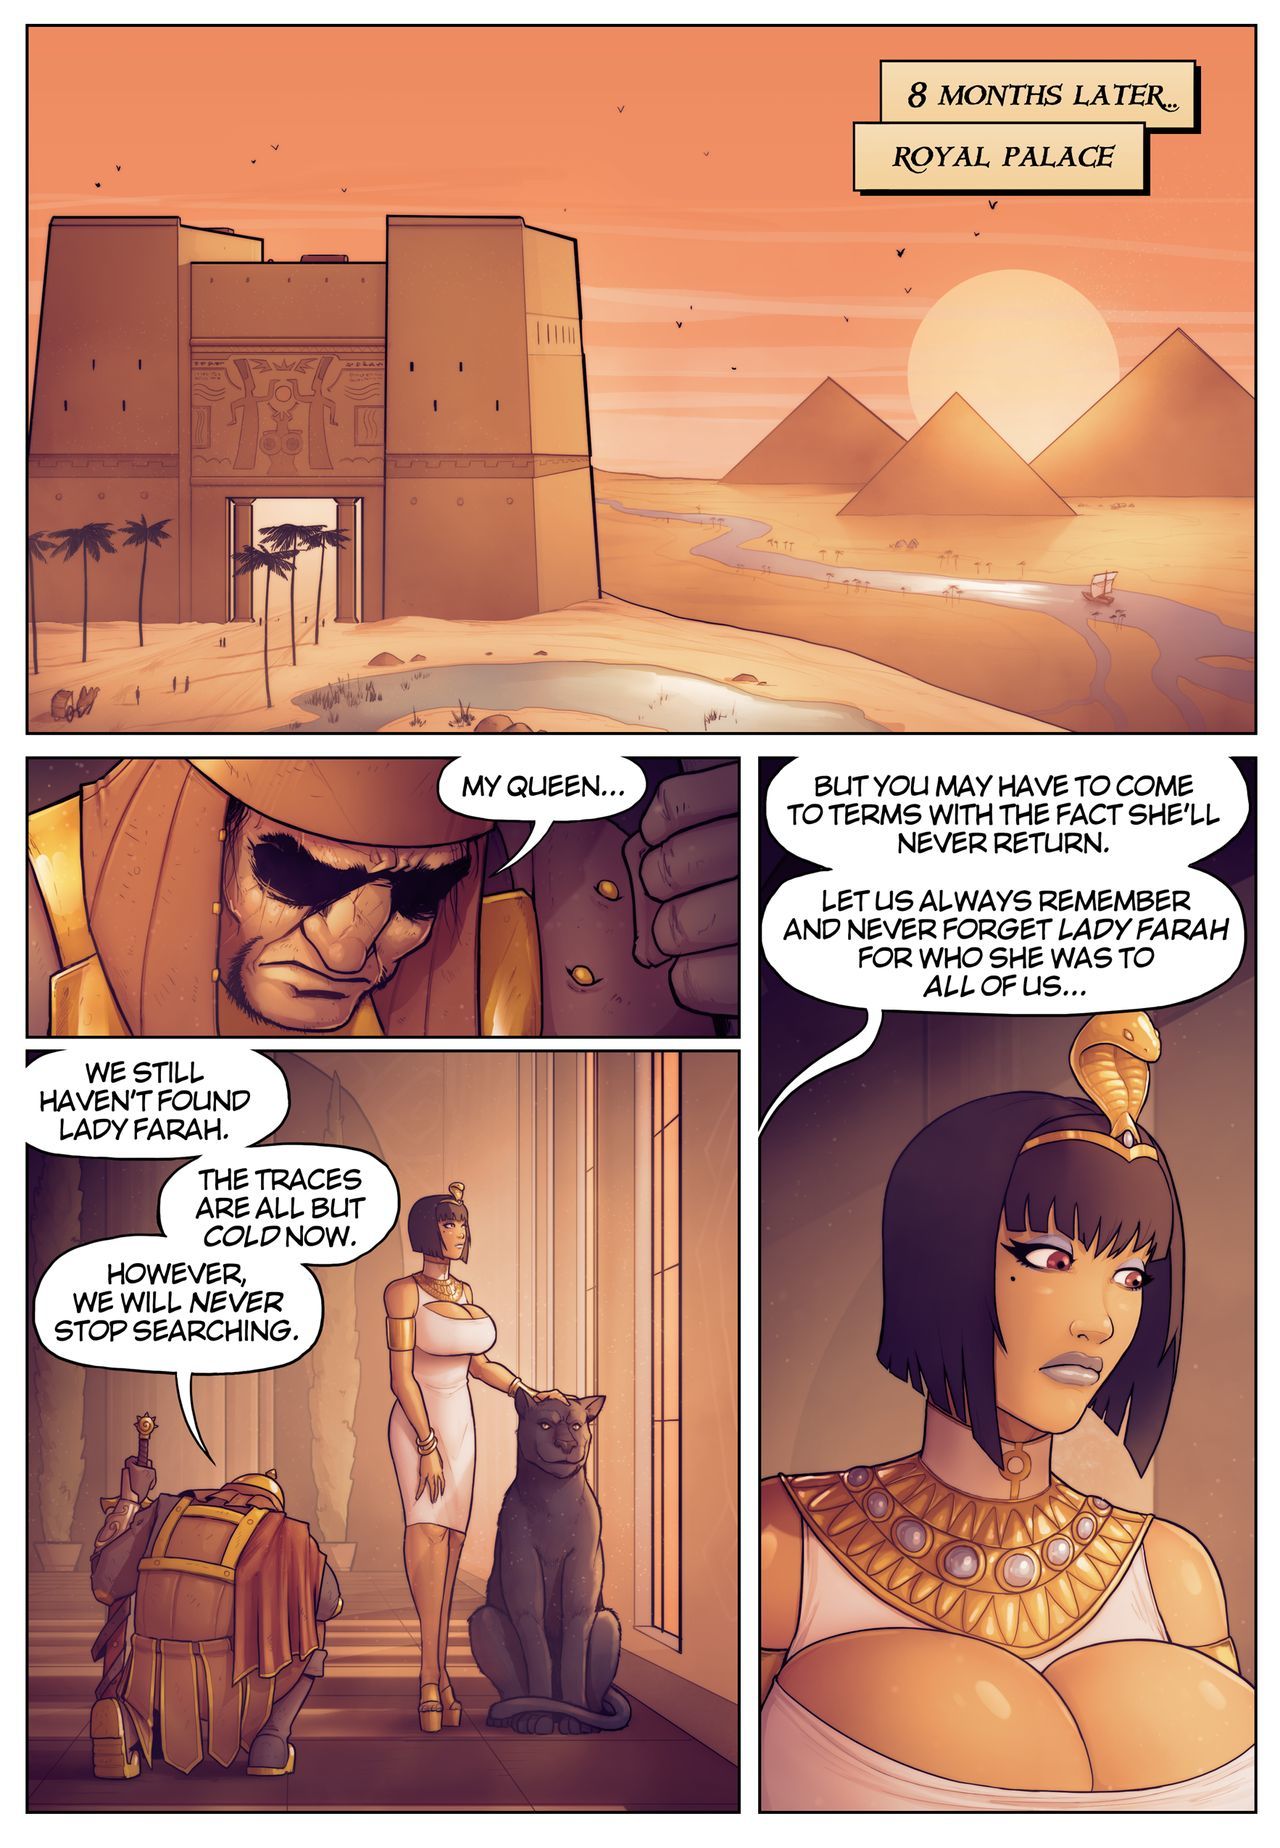 传奇 的 女王 奥帕拉 故事 的 pharah: 在 的 阴影 的 anubis*